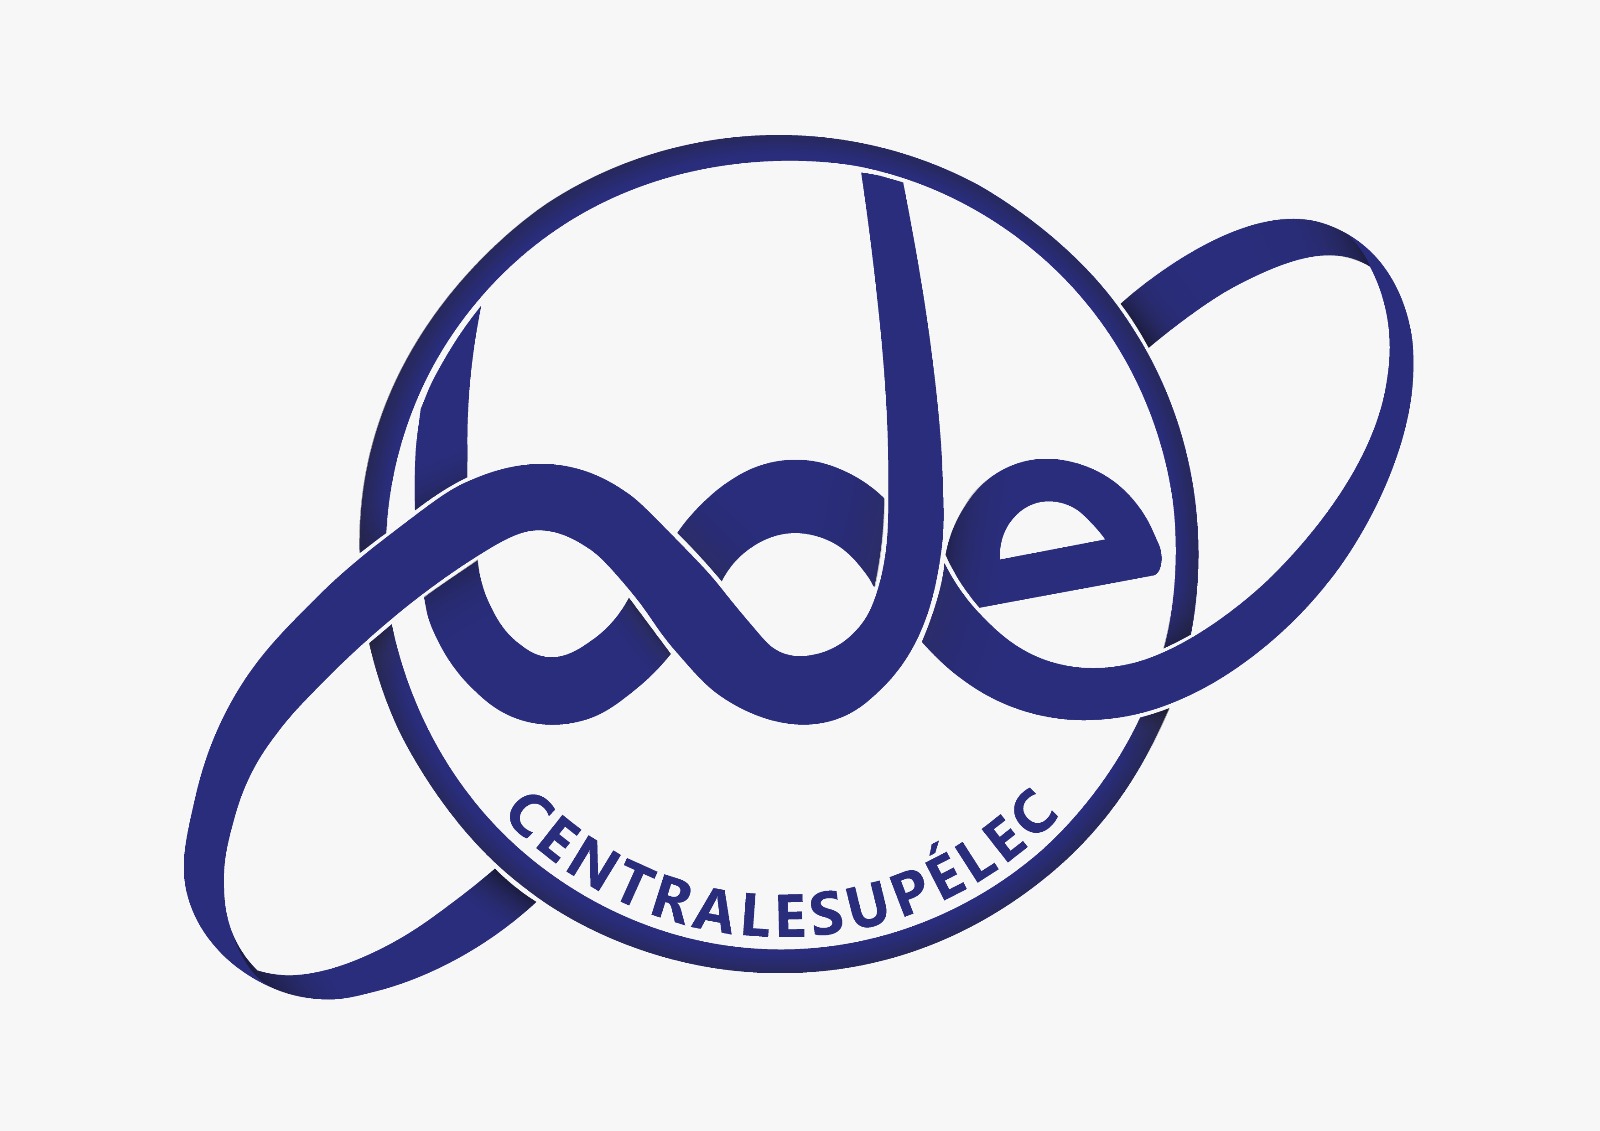 BDE CentraleSupélec - Campus de Rennes